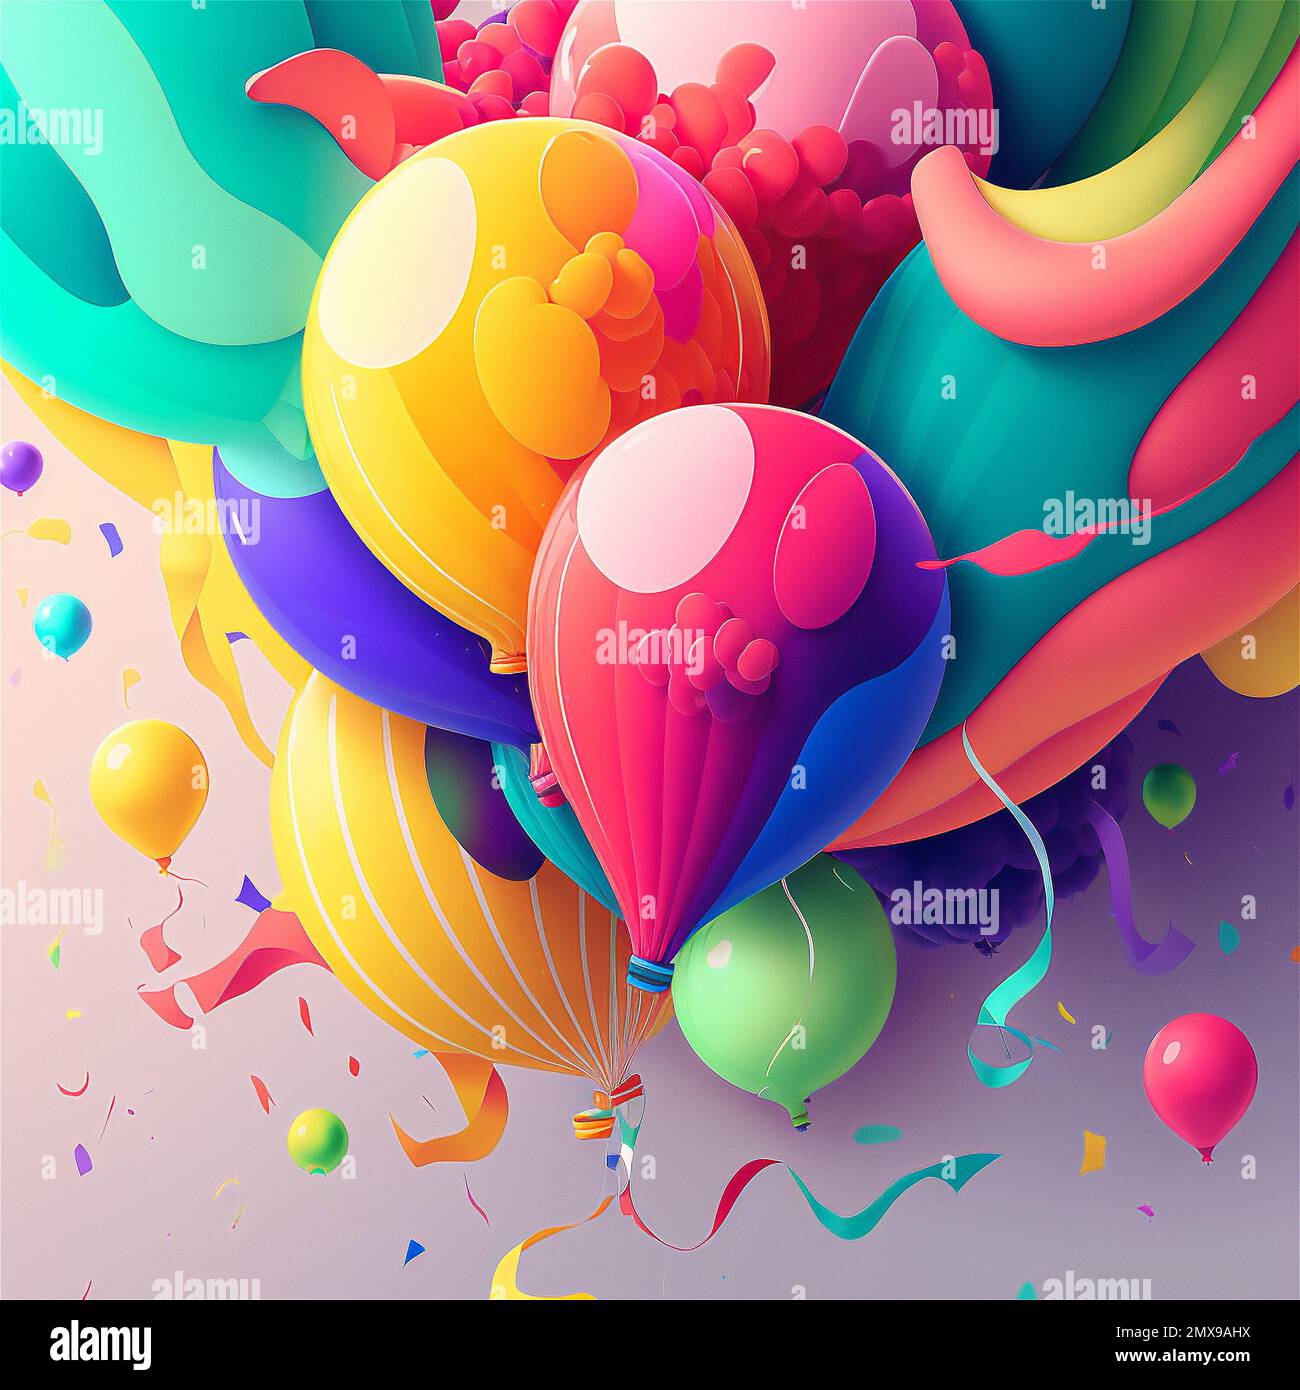 Fliegende Luftballons Deko-Poster. Kunstballon-Illustration in  Pastellfarben Stockfotografie - Alamy